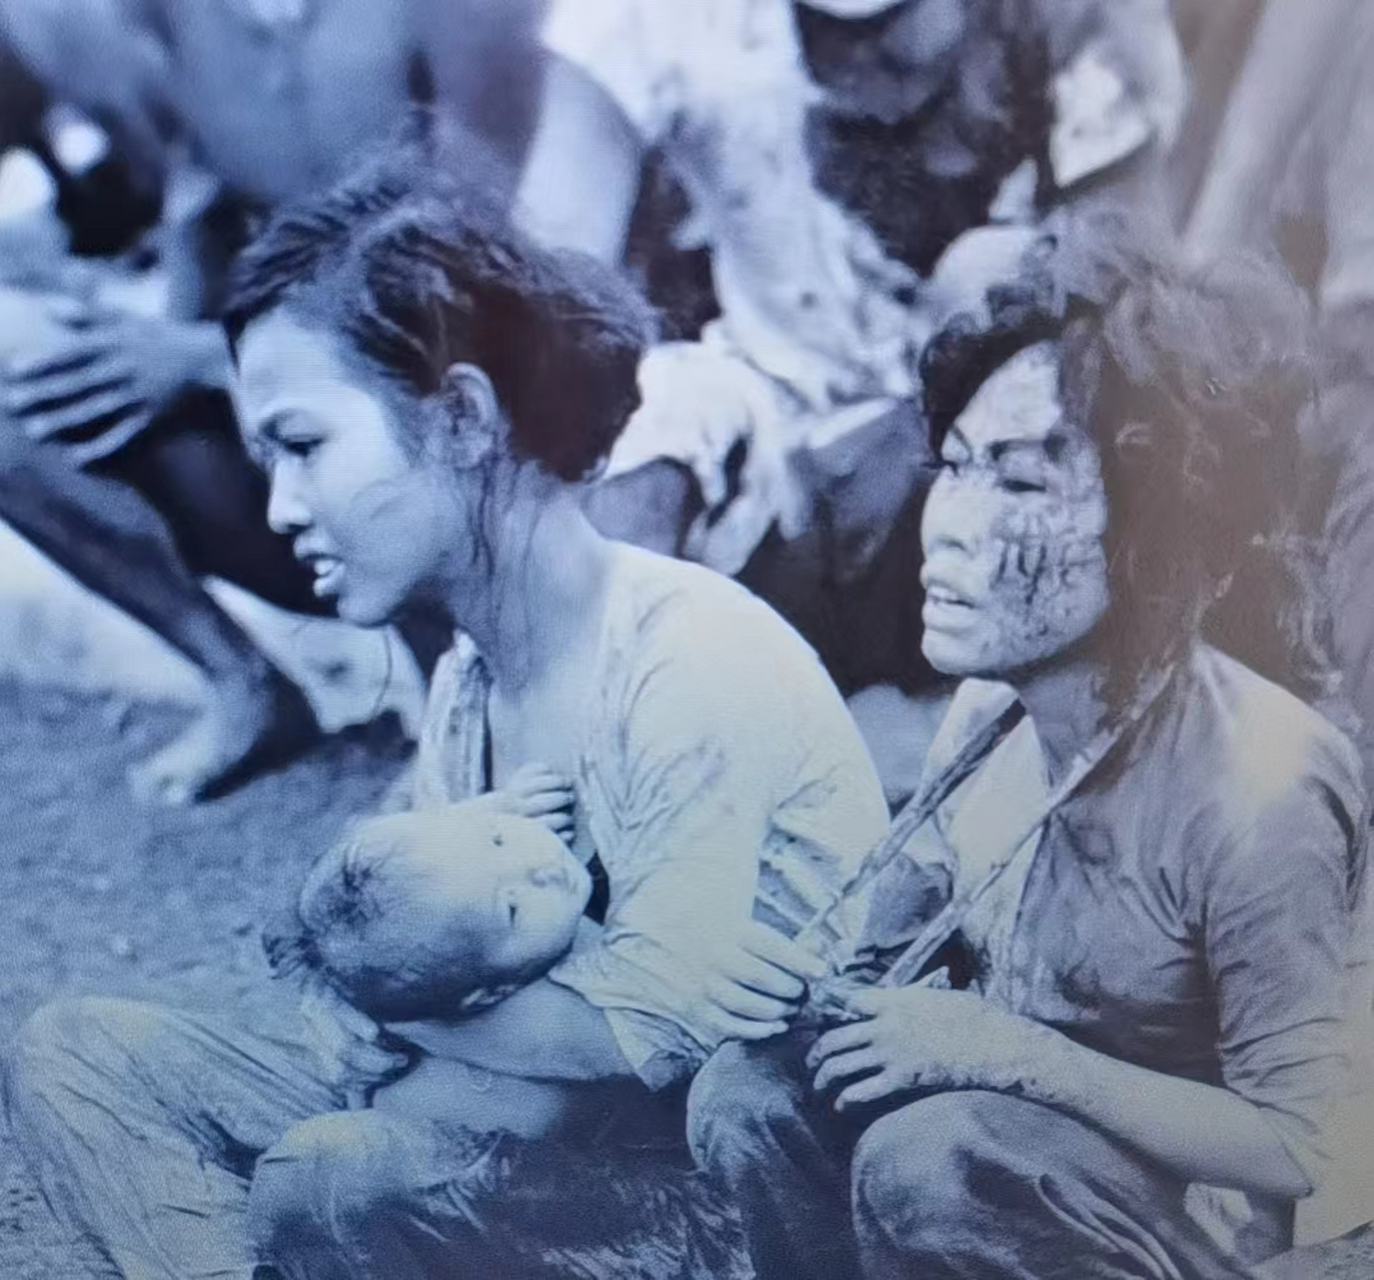 越南女人蒙着双眼被一名美国大兵抗在肩上,女人的命运无人知晓  照片